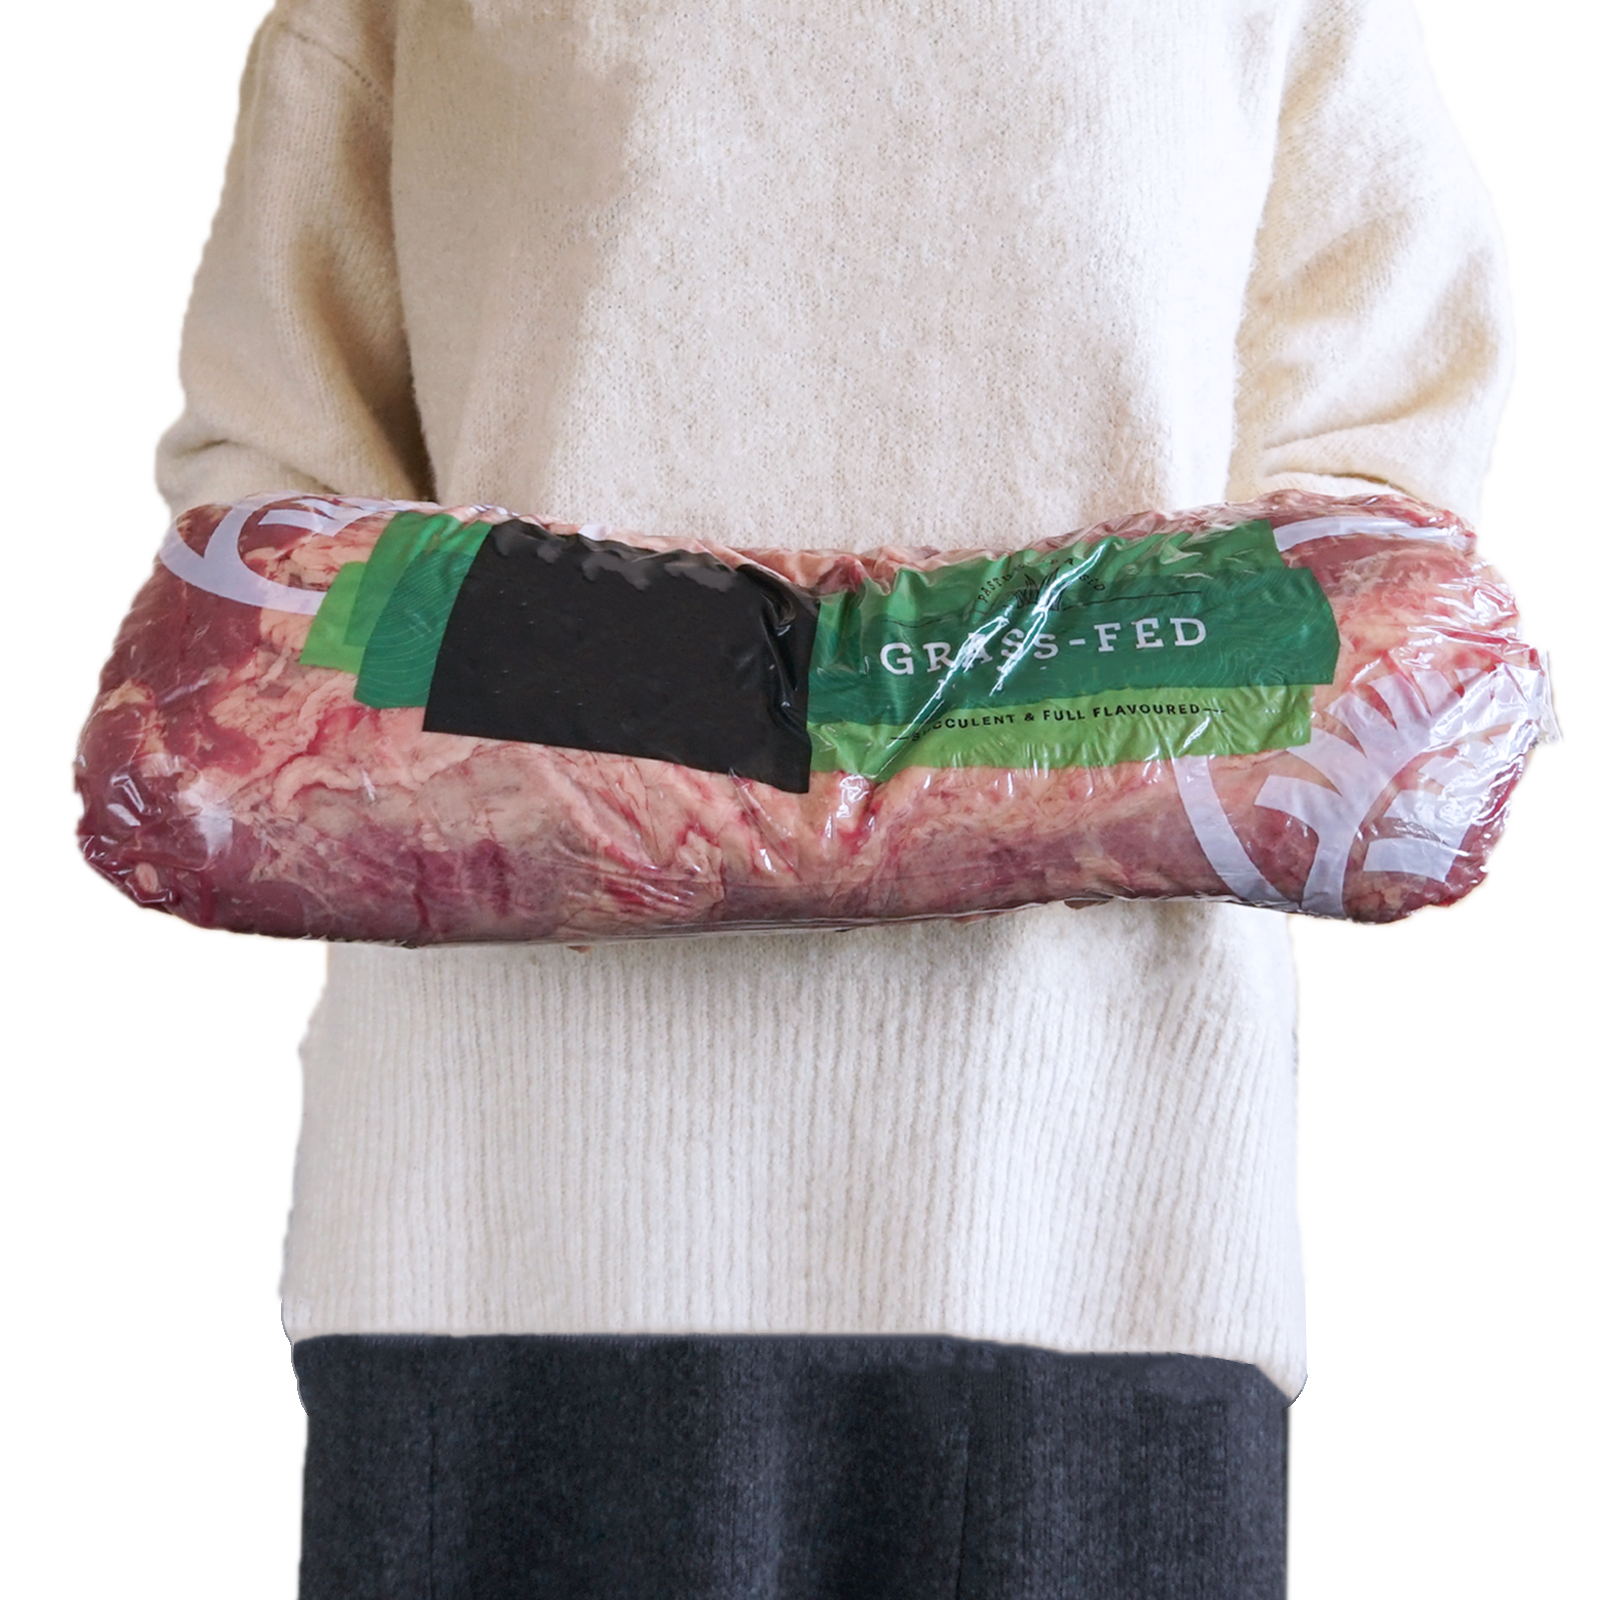 冷蔵商品 送料無料 グラスフェッドビーフ 牛肉 リブロース ブロック ニュージーランド産 牧草牛 (4.4kg)【日時指定不可】【銀行振込不可】 ホライズンファームズ